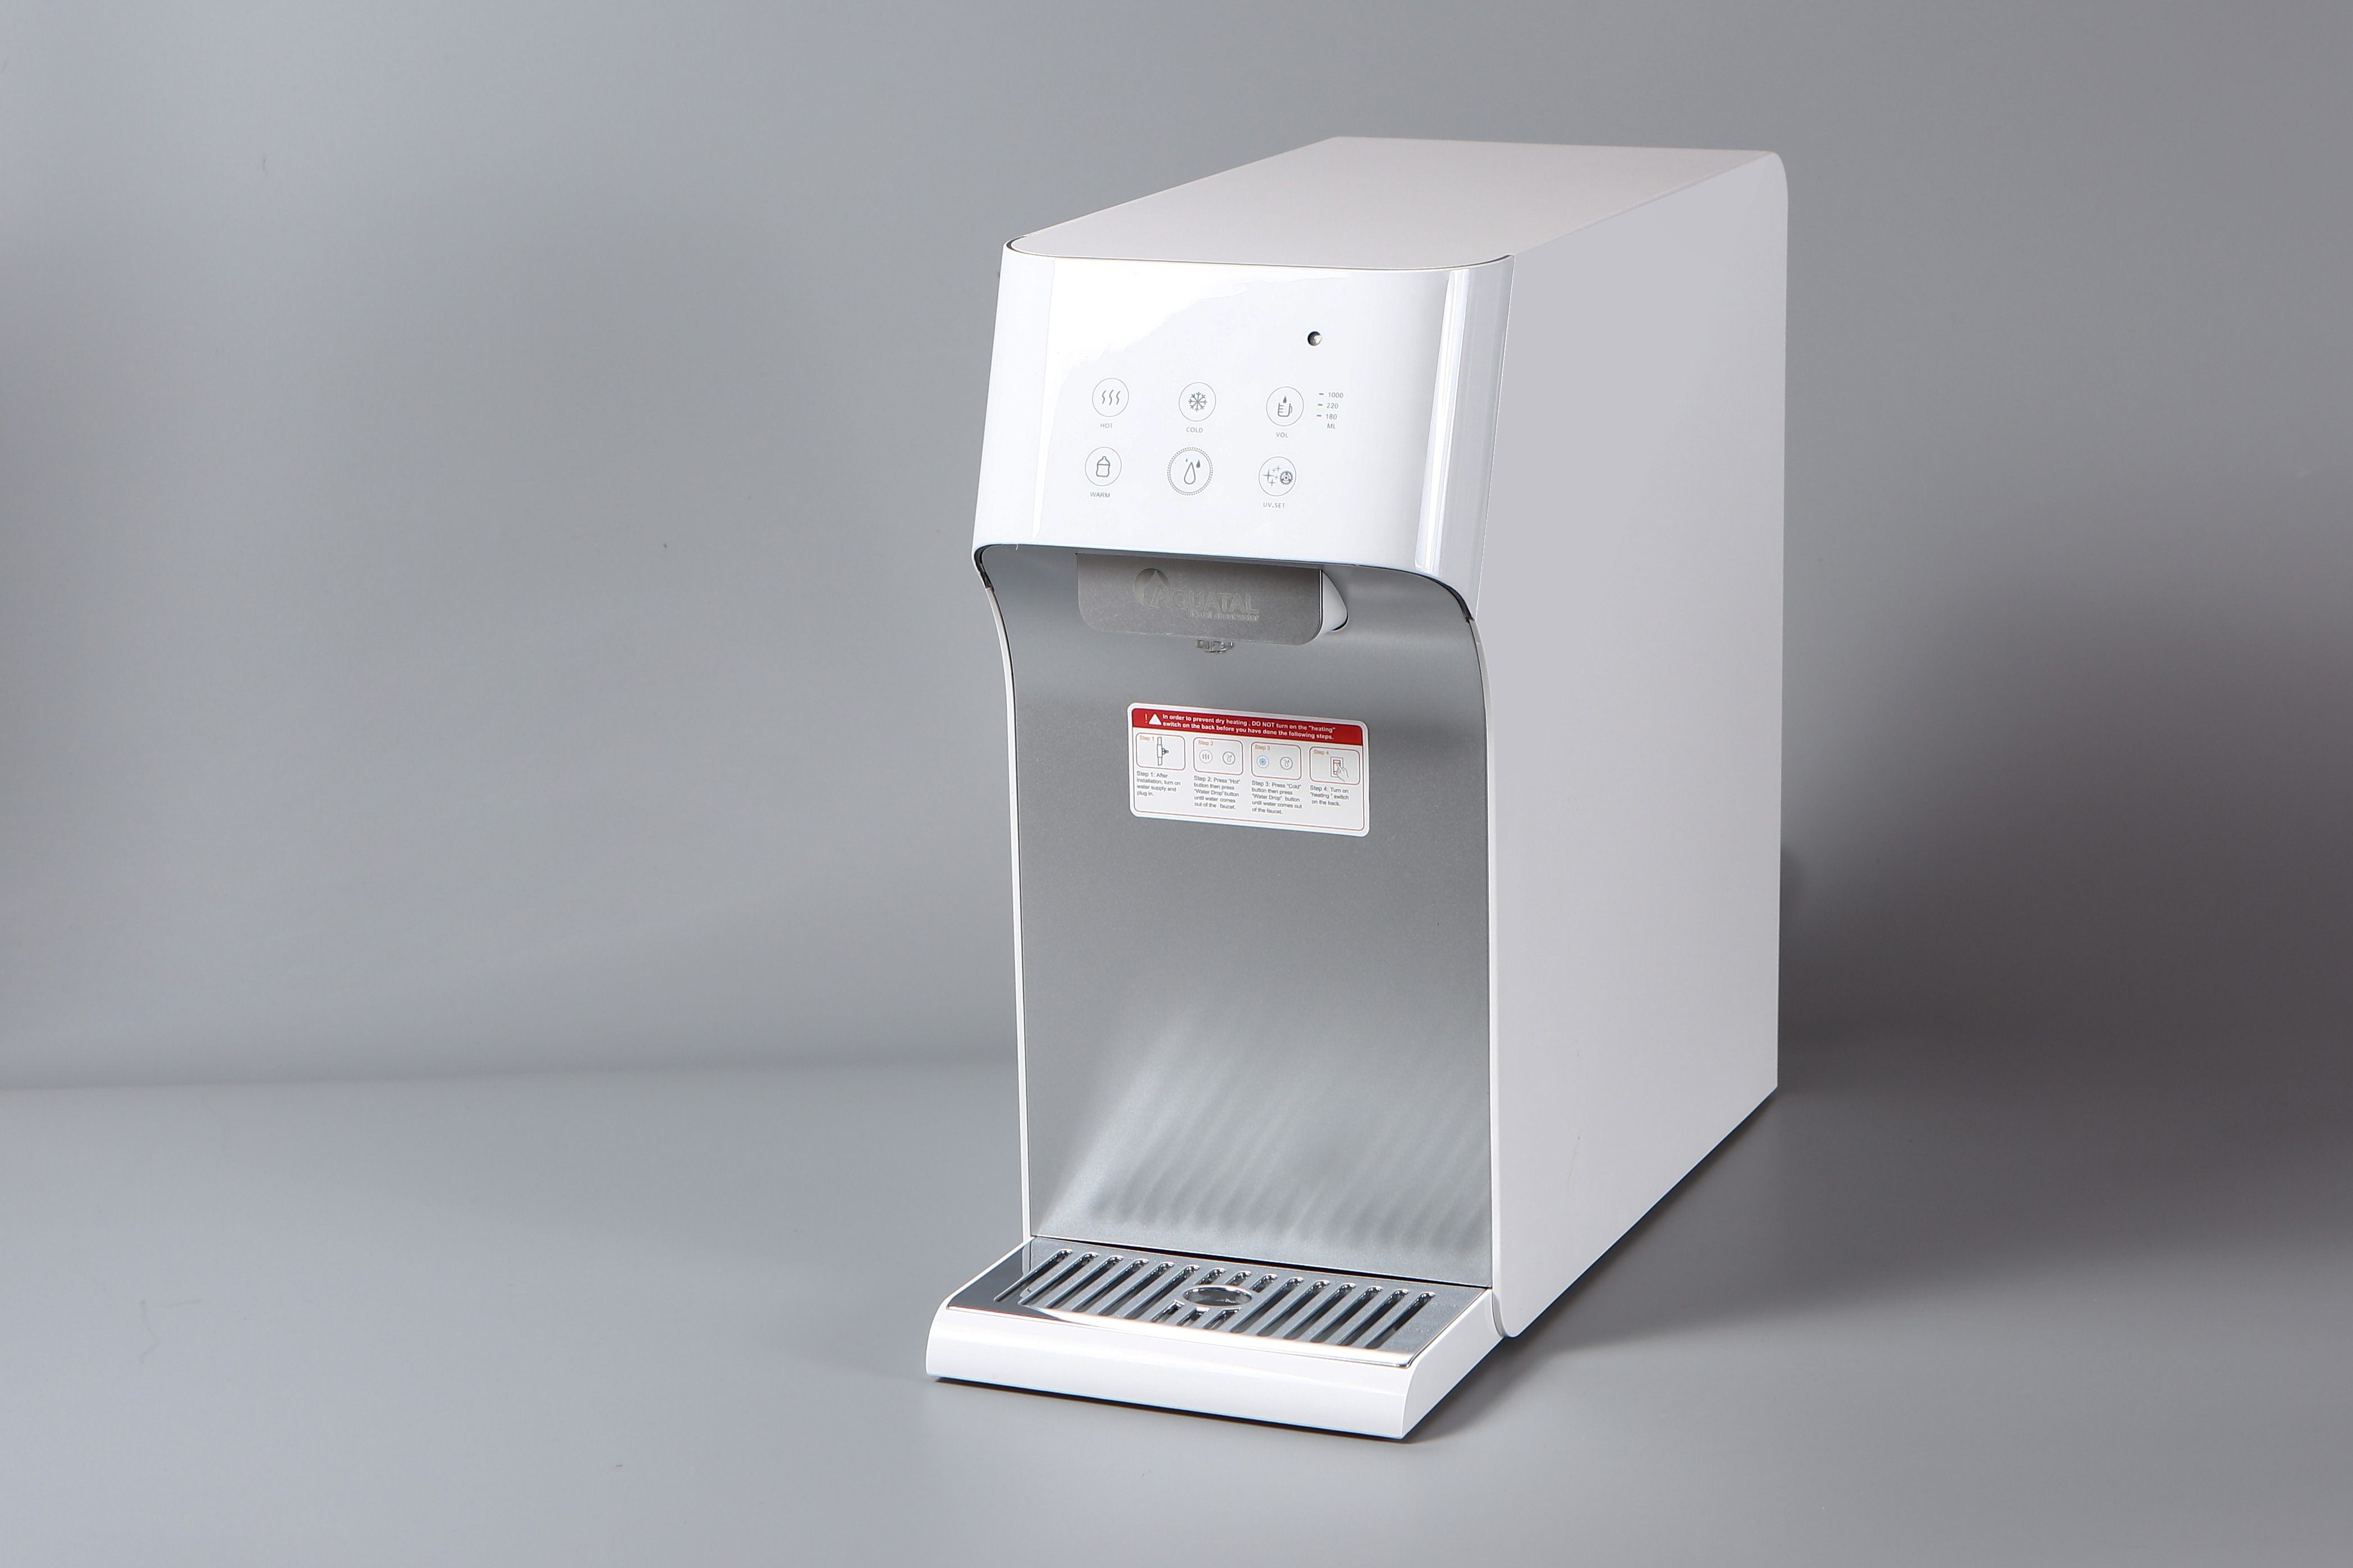 Système UF POU chaud et froid de bureau Puretal avec distributeur de purificateur d'eau UV